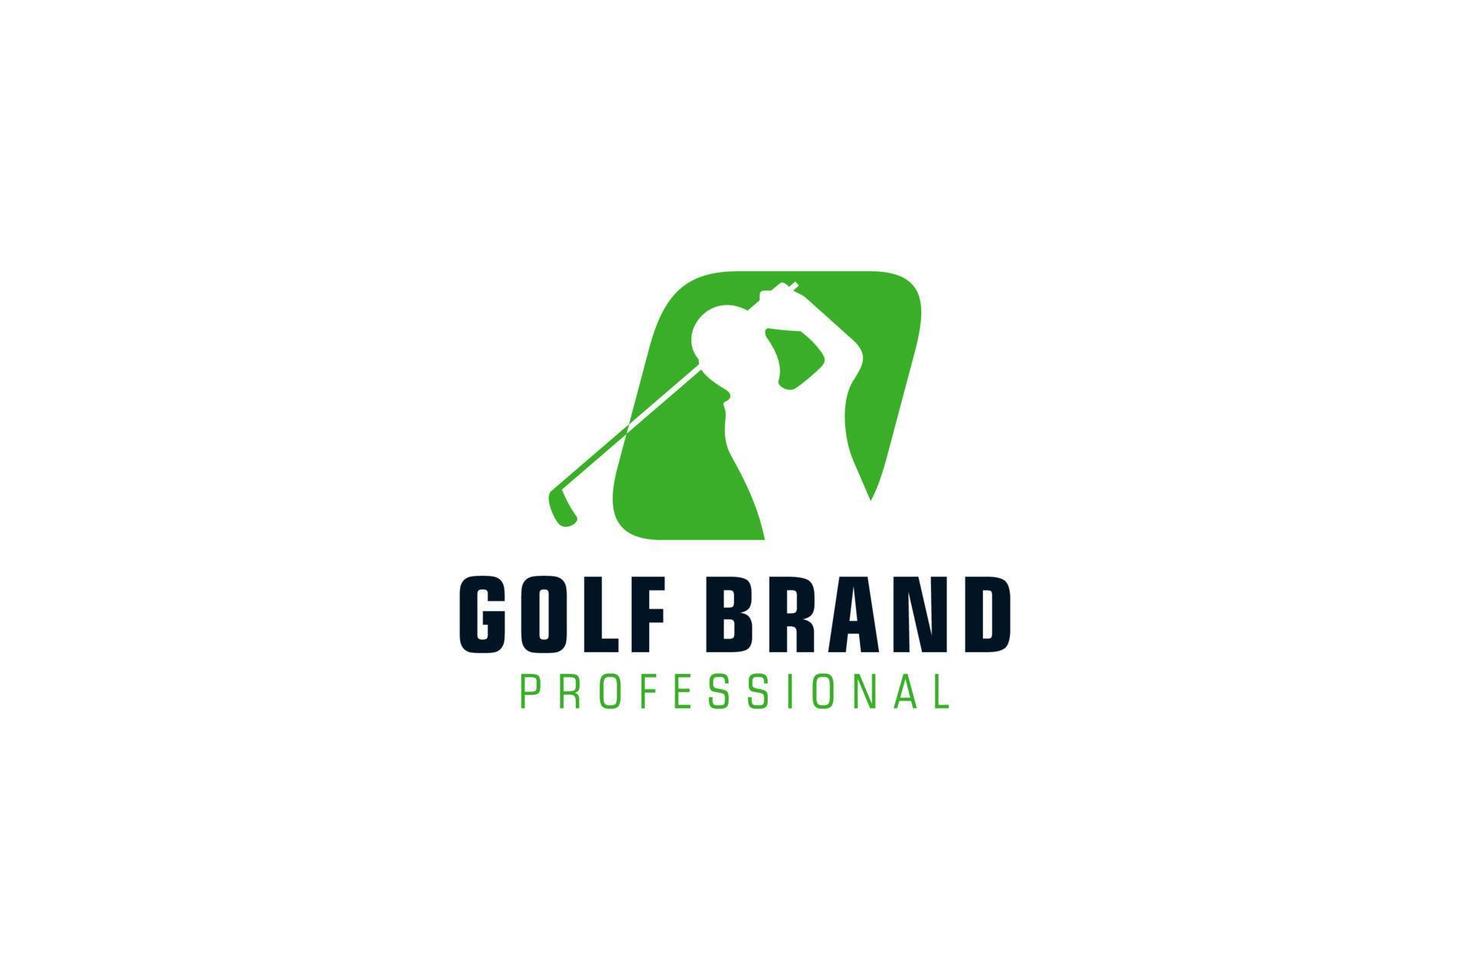 Letter O for Golf logo design vector template, Vector label of golf, Logo of golf championship, illustration, Creative icon, design concept